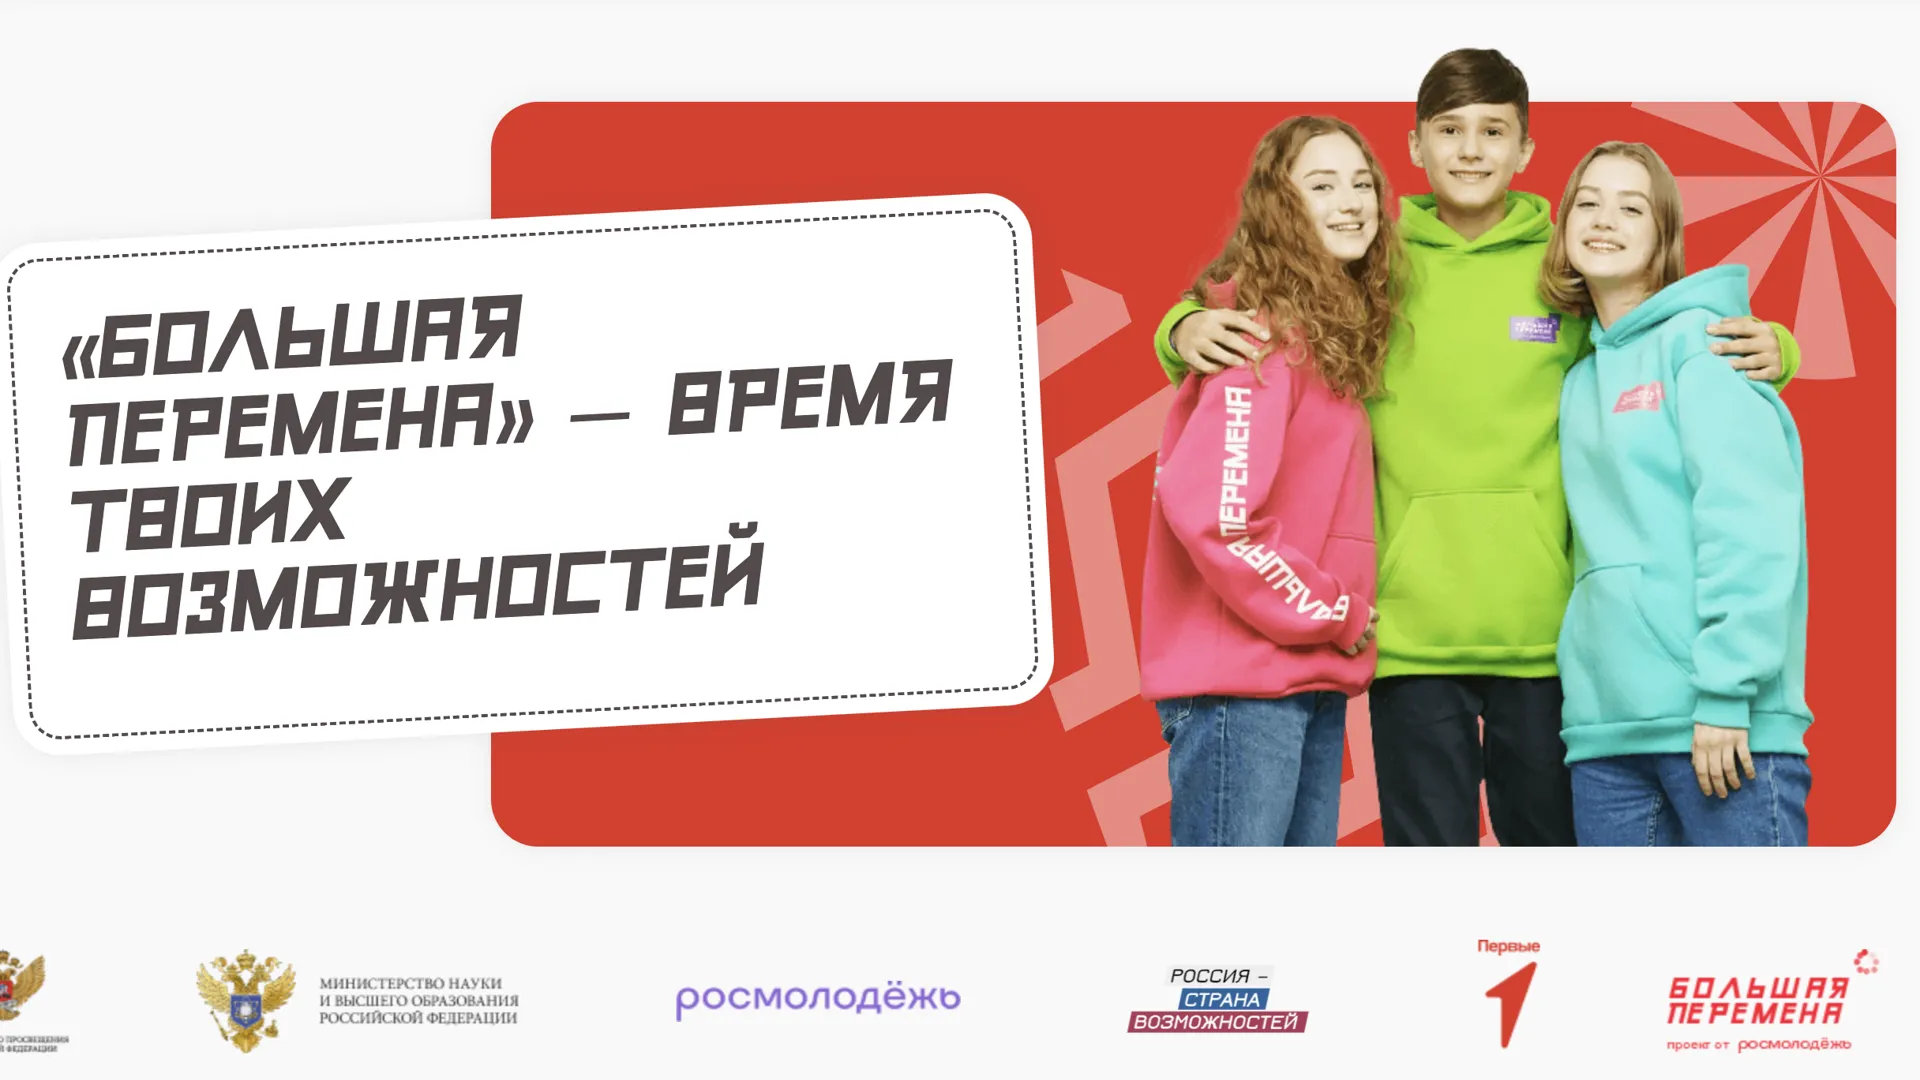 Учащиеся Подмосковья приглашаются на Всероссийский конкурс «Большая перемена»